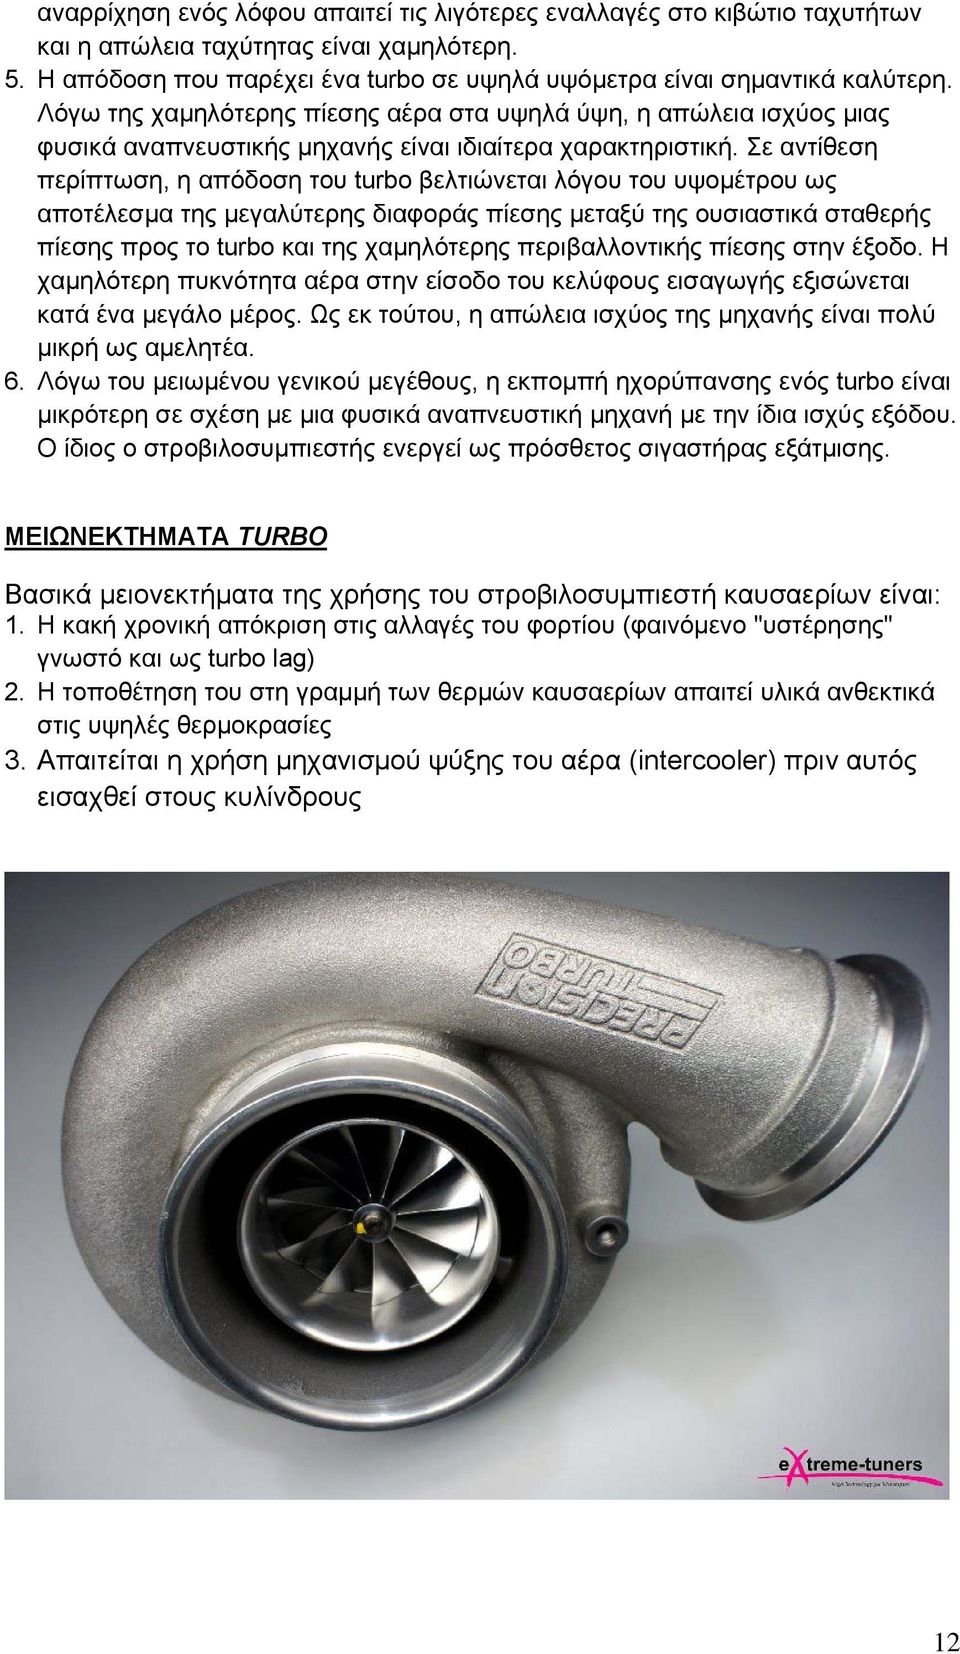 Σε αντίθεση περίπτωση, η απόδοση του turbo βελτιώνεται λόγου του υψομέτρου ως αποτέλεσμα της μεγαλύτερης διαφοράς πίεσης μεταξύ της ουσιαστικά σταθερής πίεσης προς το turbo και της χαμηλότερης